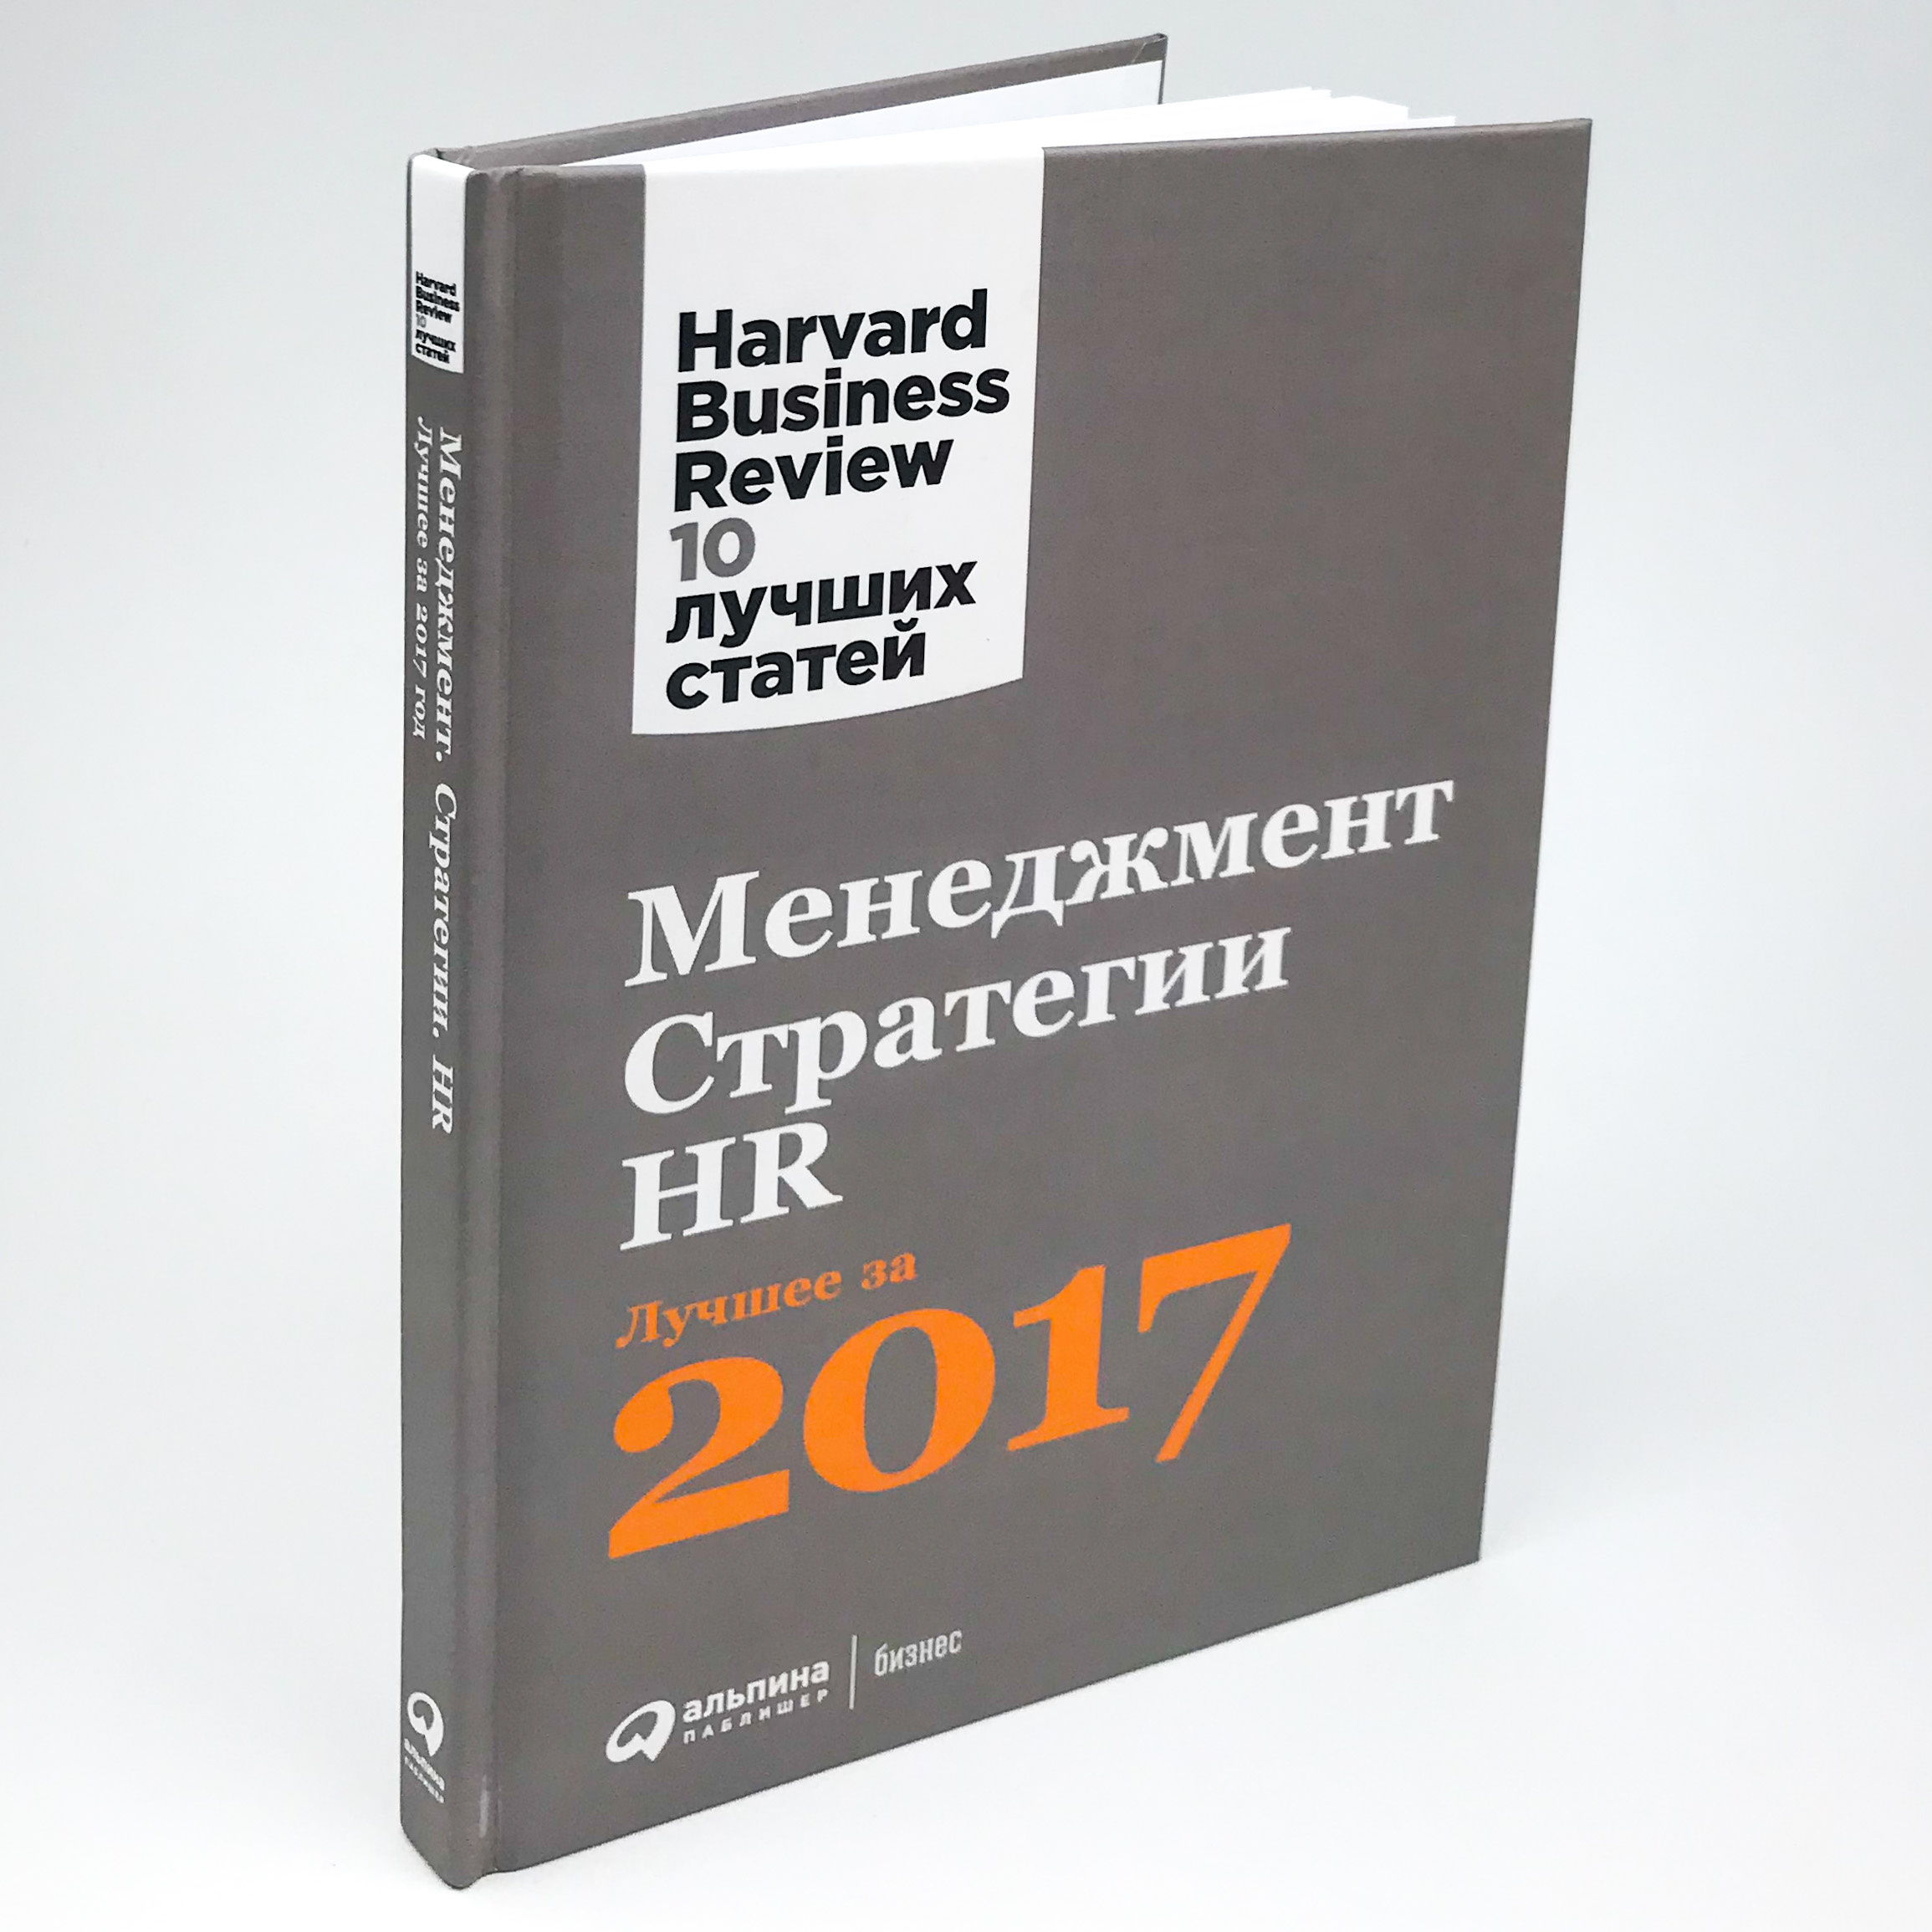 Менеджмент. Стратегии. HR. Лучшее за 2017 год. Harvard Business Review. Автор — Коллектив авторов. 